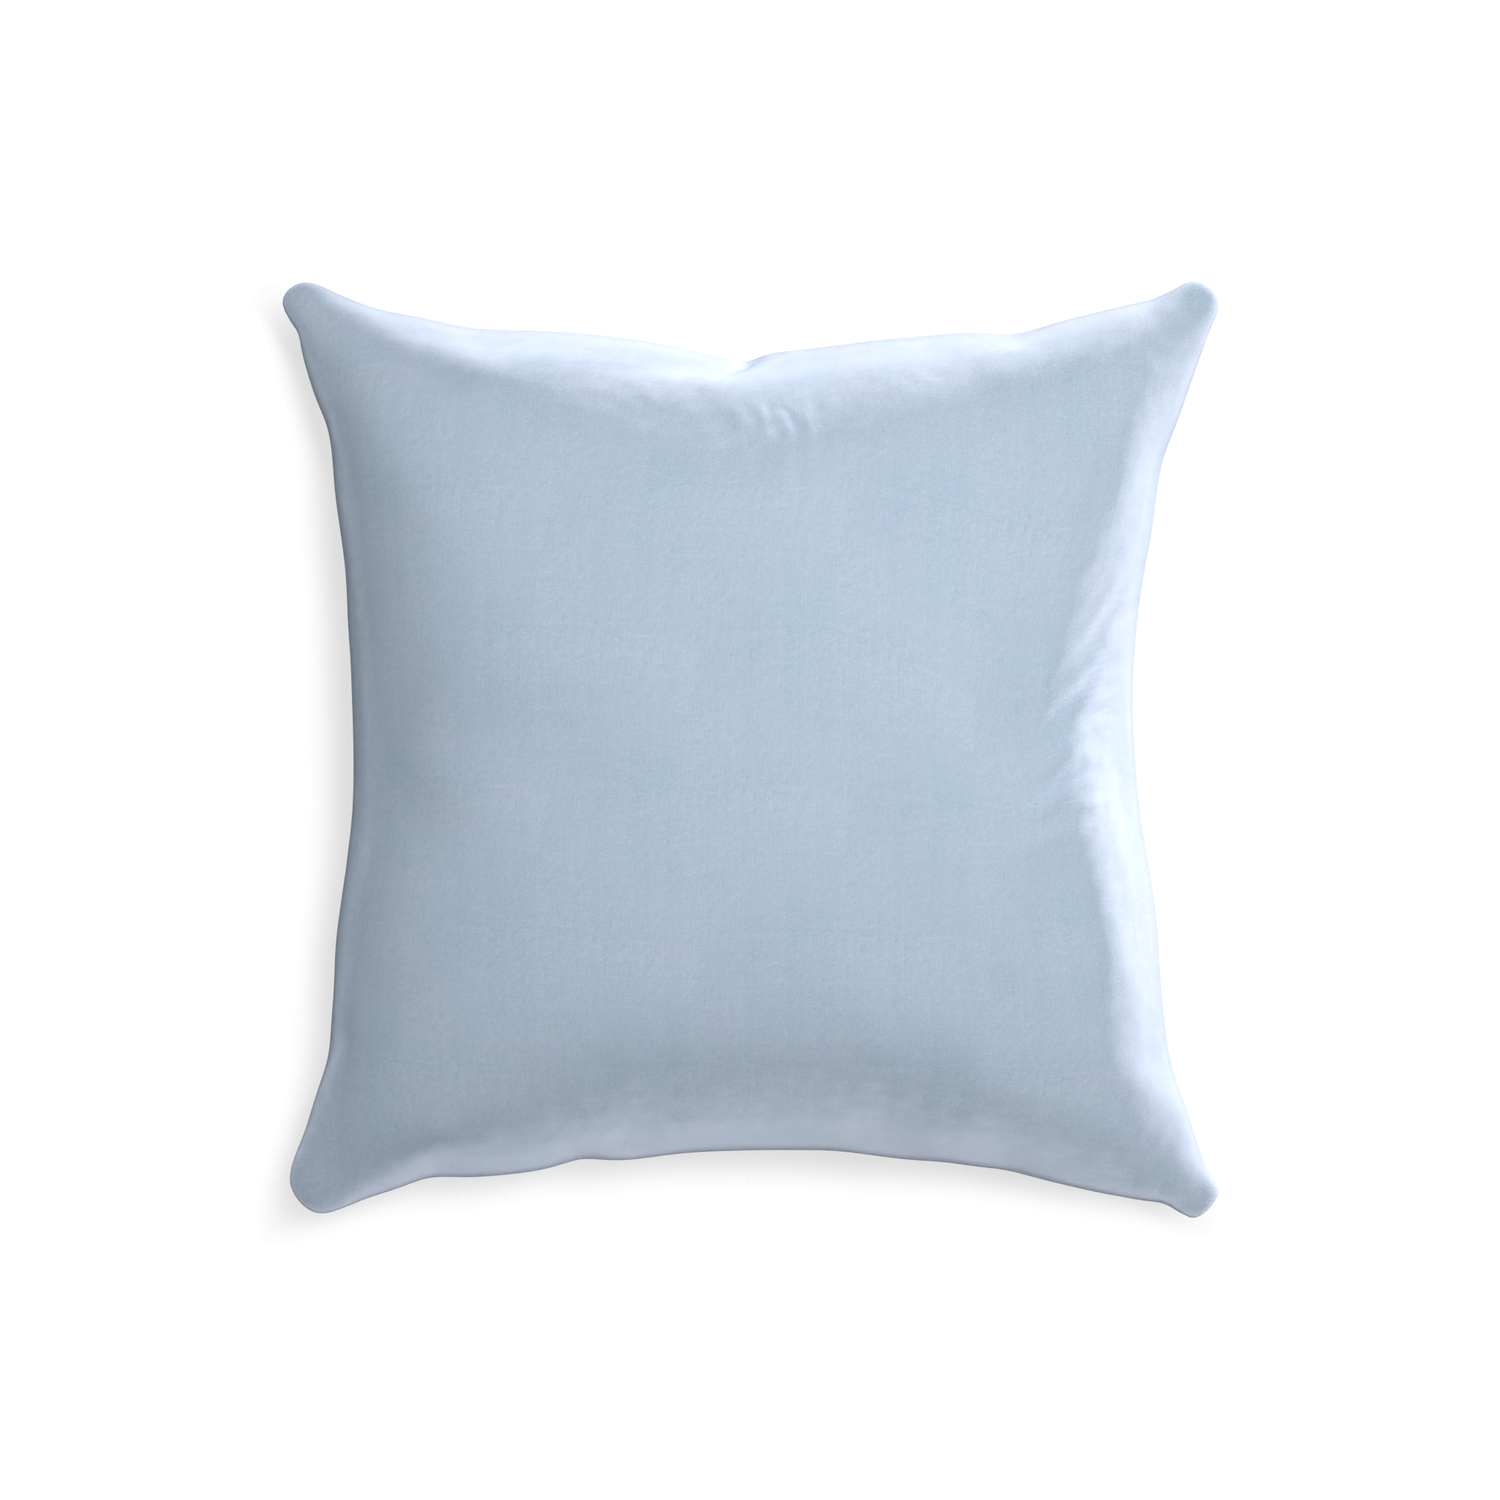 20-square sky velvet custom pillow with none on white background